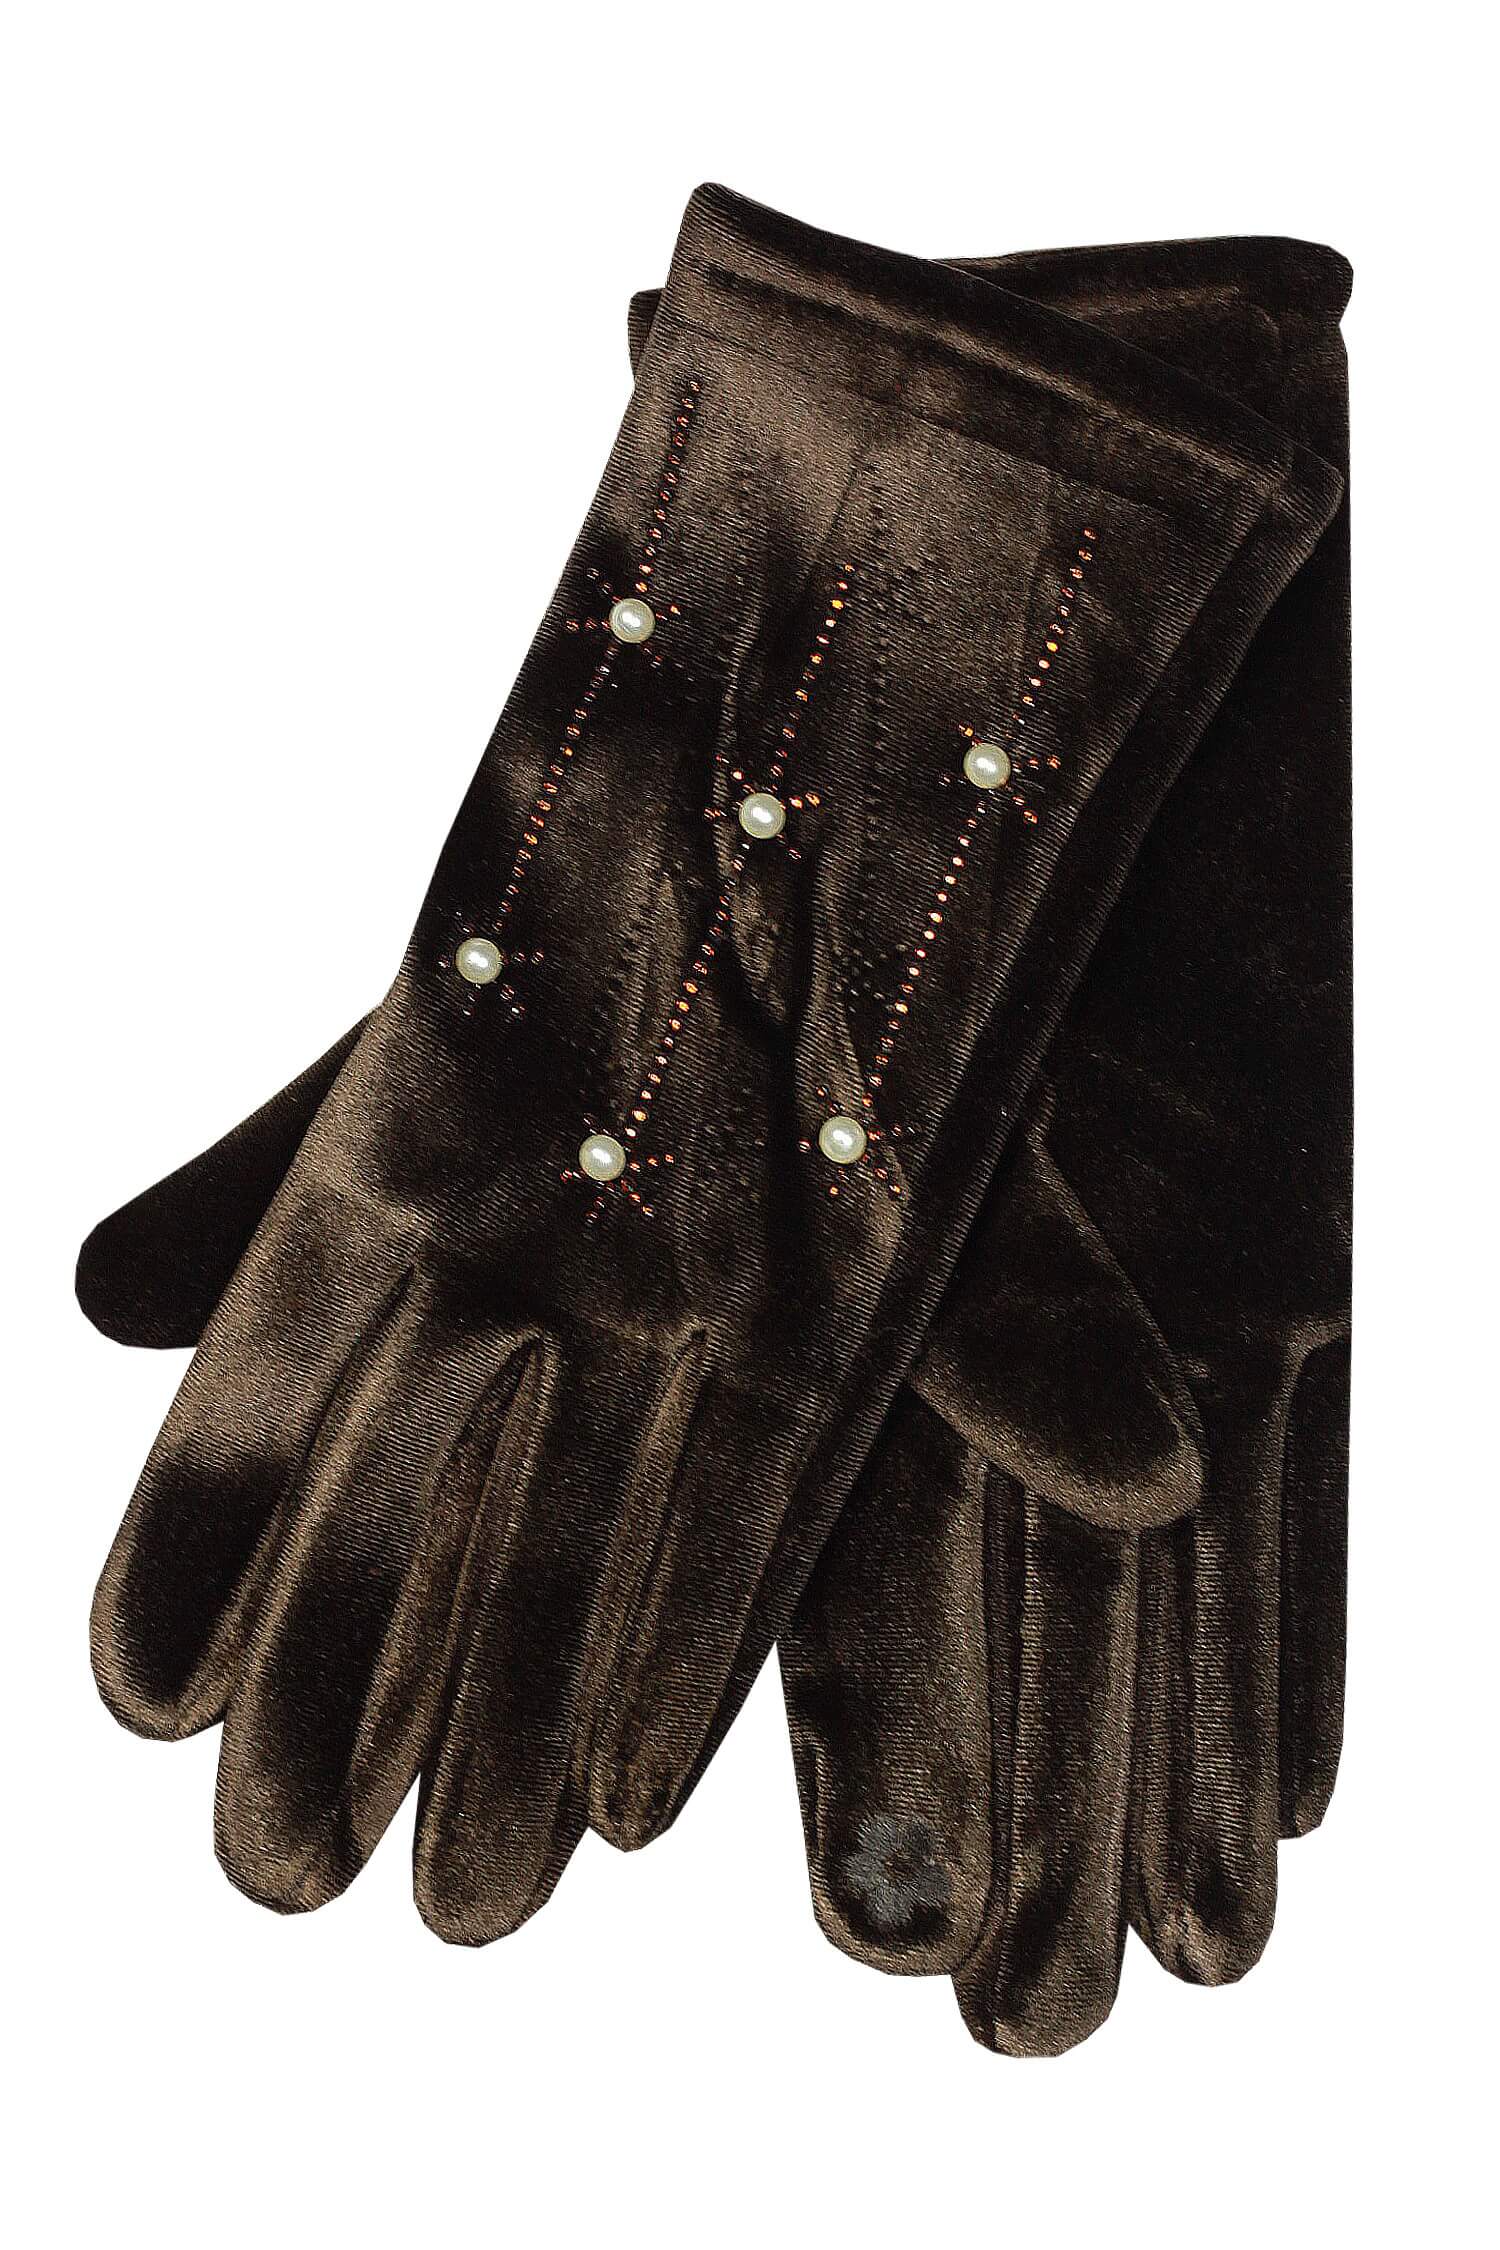 Sofia Marrone dámské rukavice na podzim L hnědá